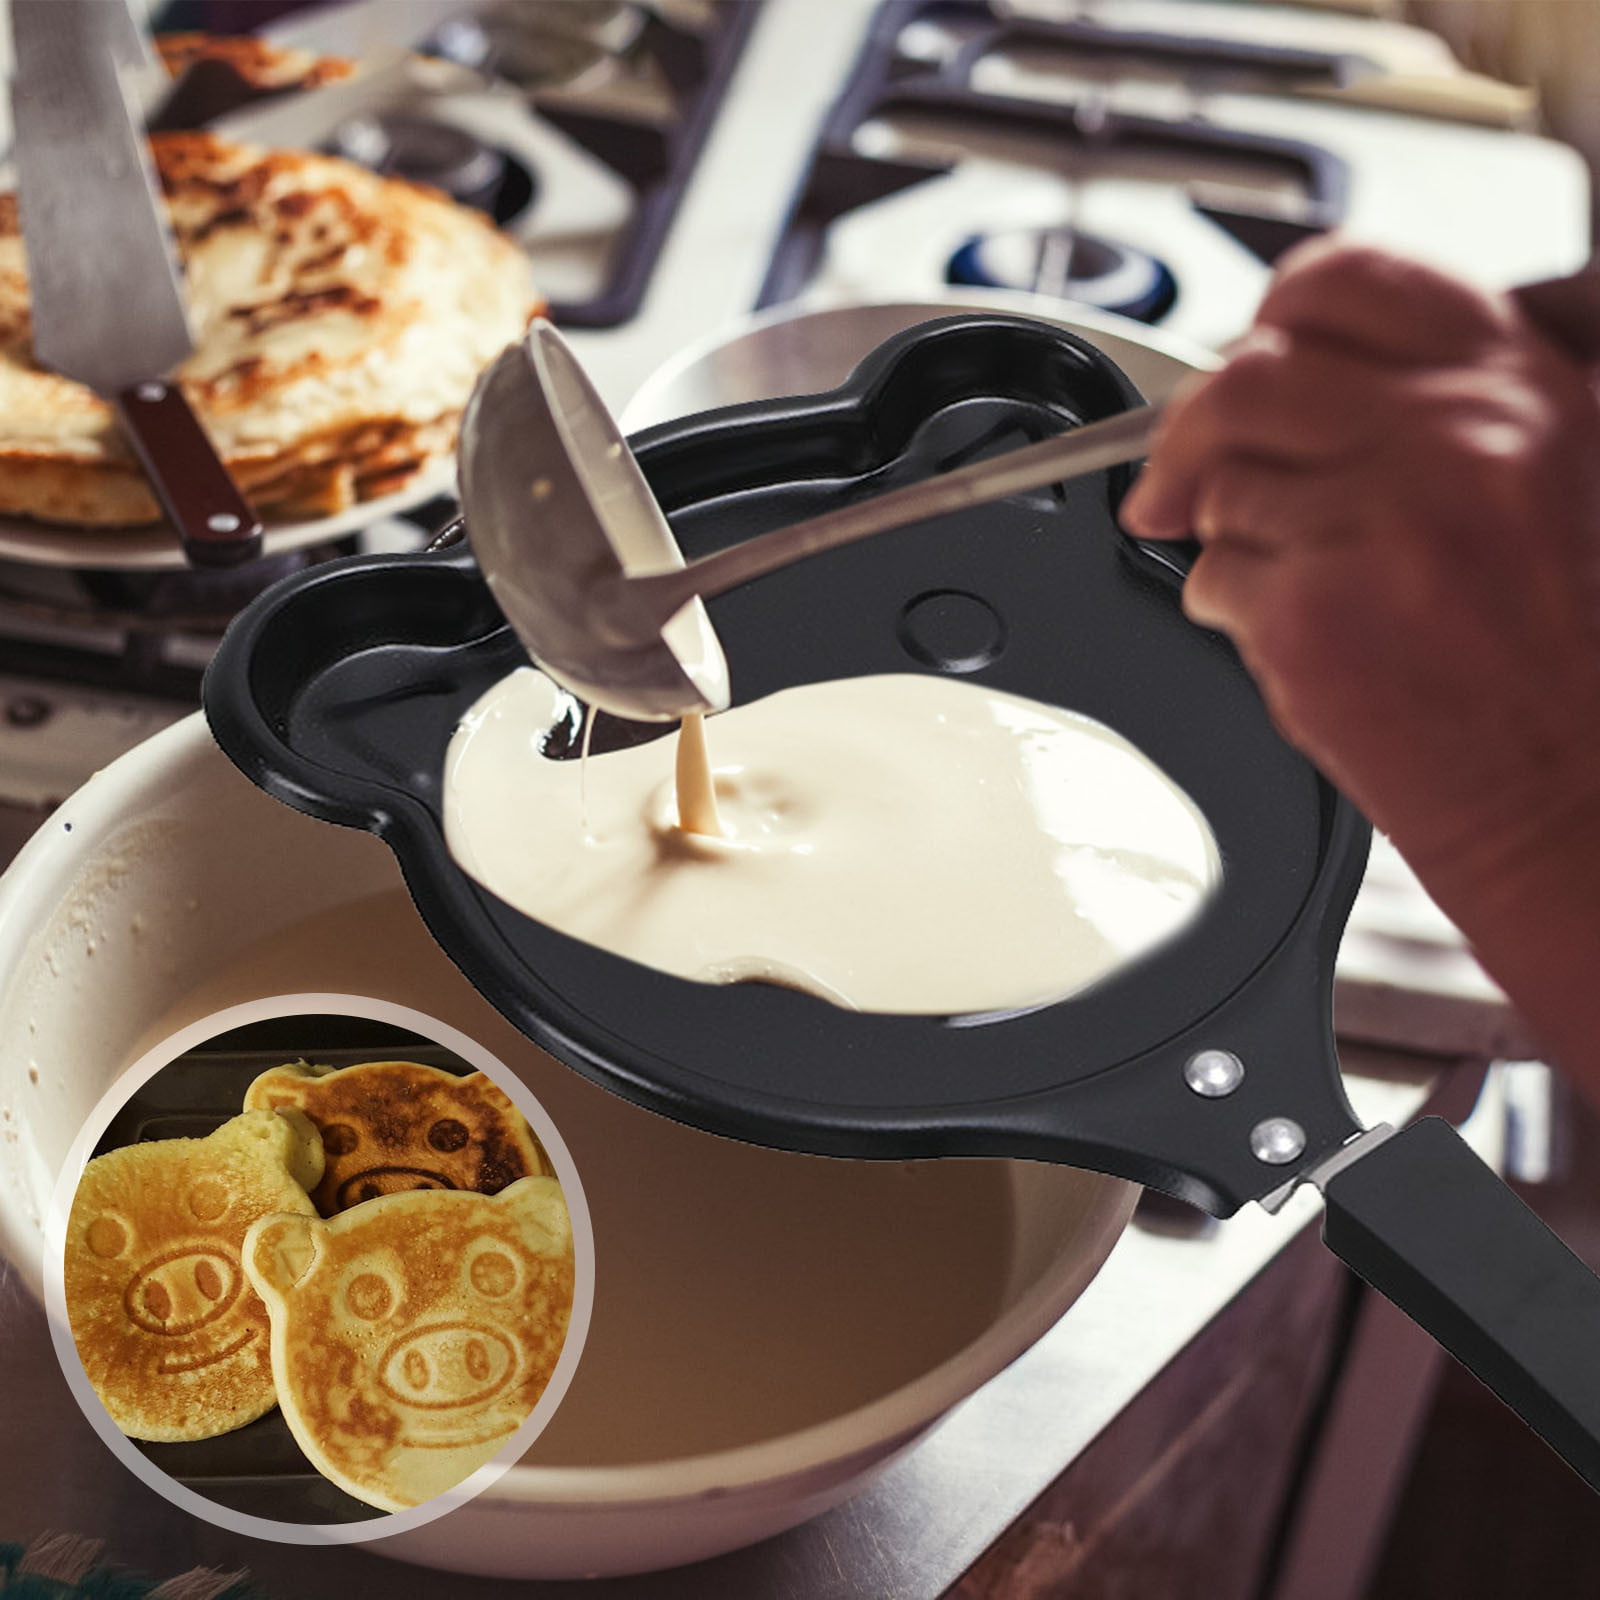 Creative Mini Omelette Pan, Handheld DIY Breakfast Omelette Mold, Pancake  Mold Maker, 7 Styles, Non-stick Coating, for Fried Eggs and Making Pancake